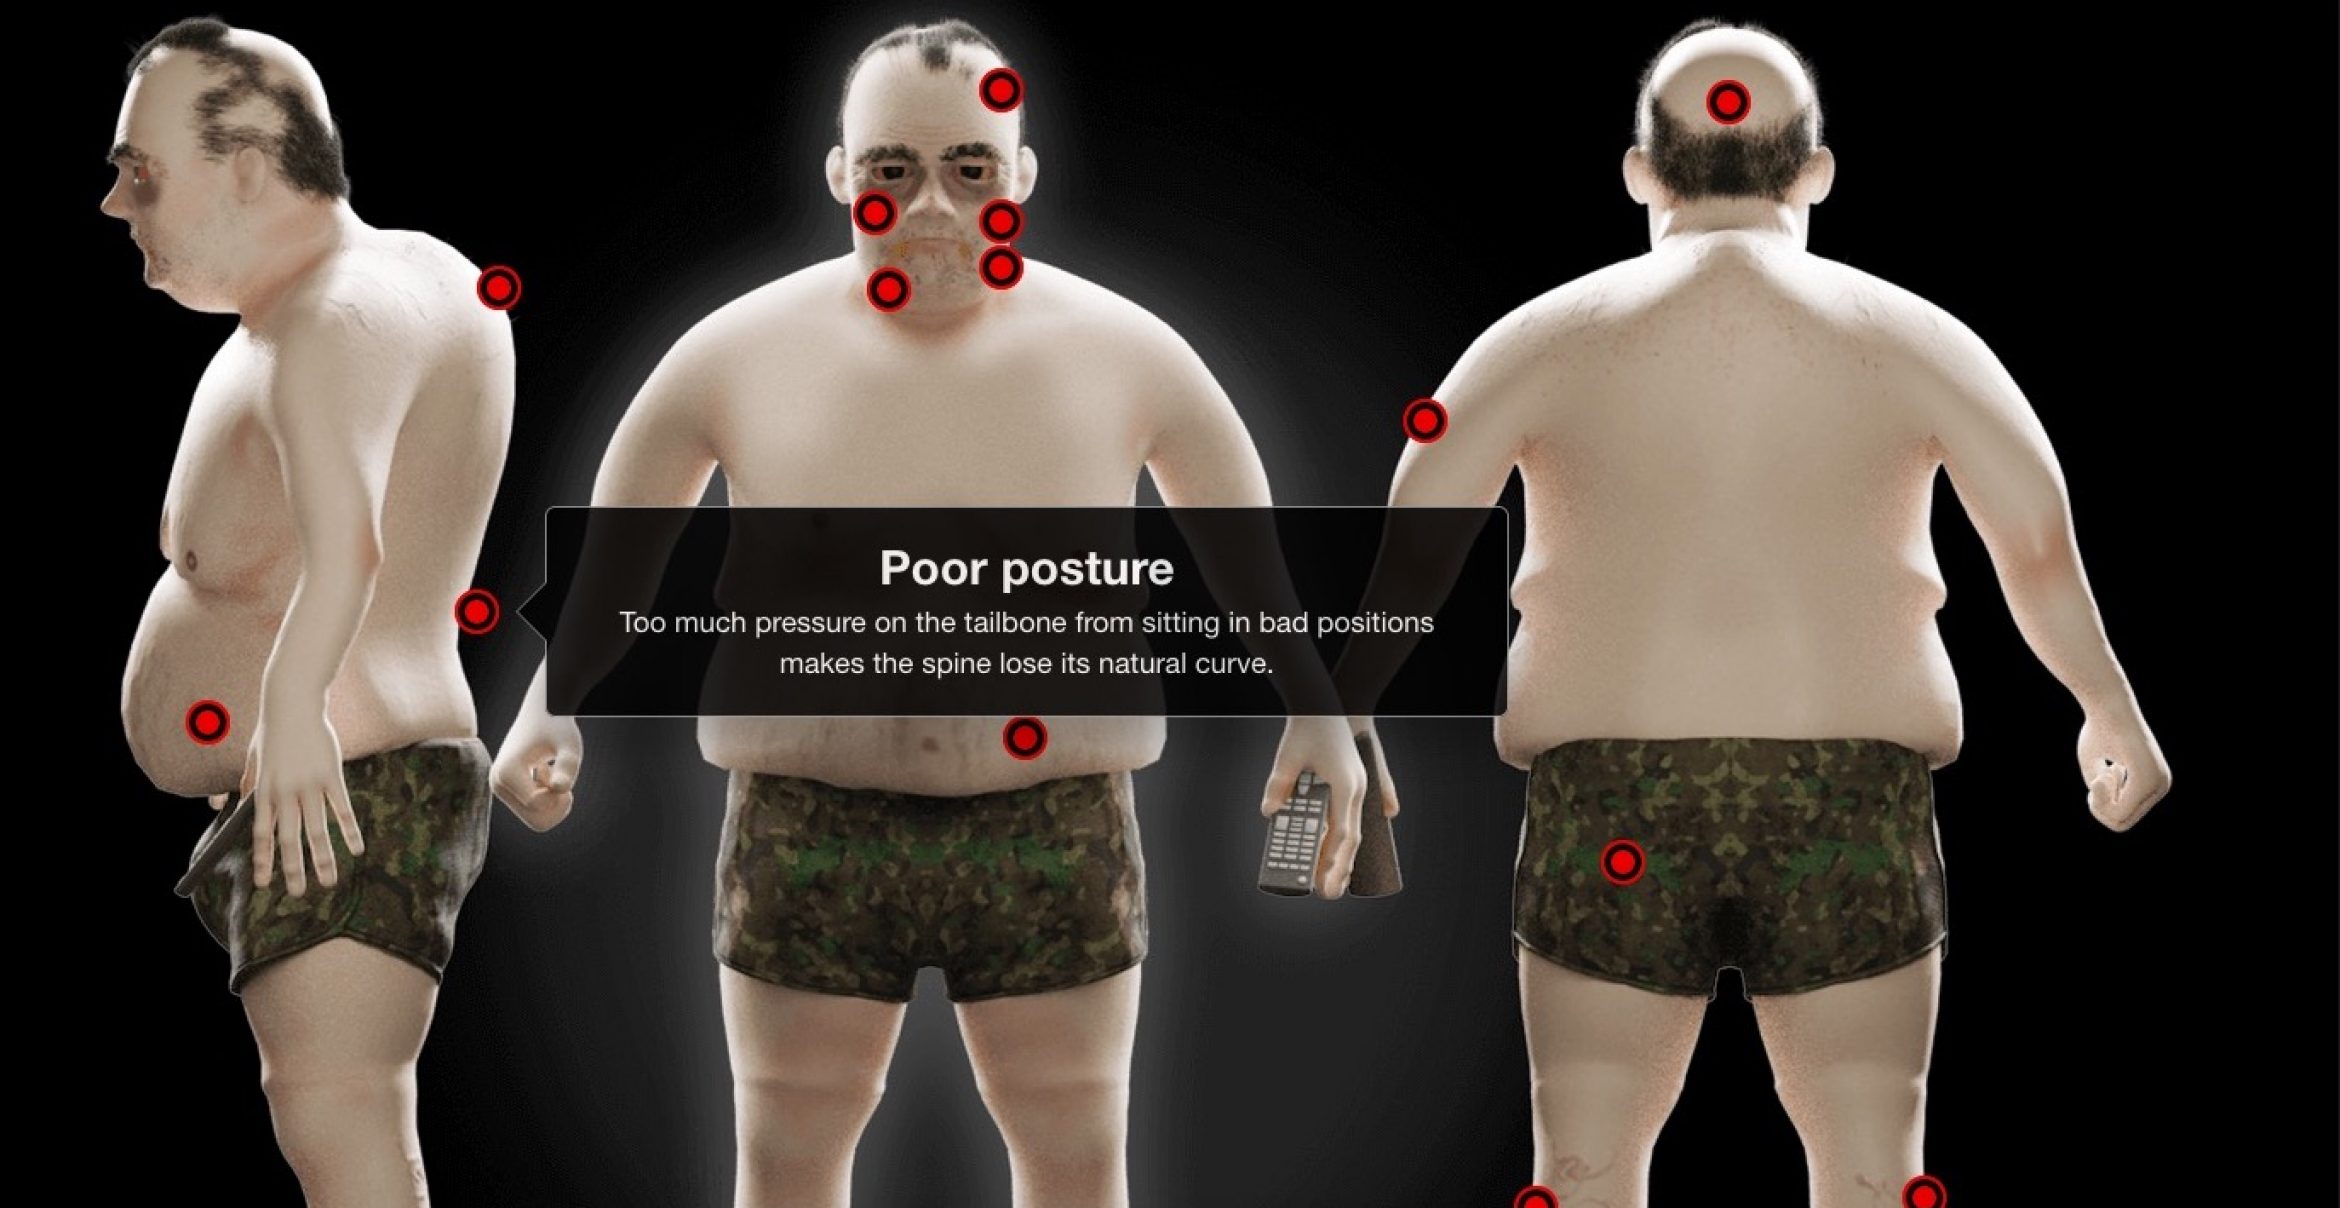 3D-Figuren zeigen, wie sich extremes Bingen auf unseren Körper auswirken kann